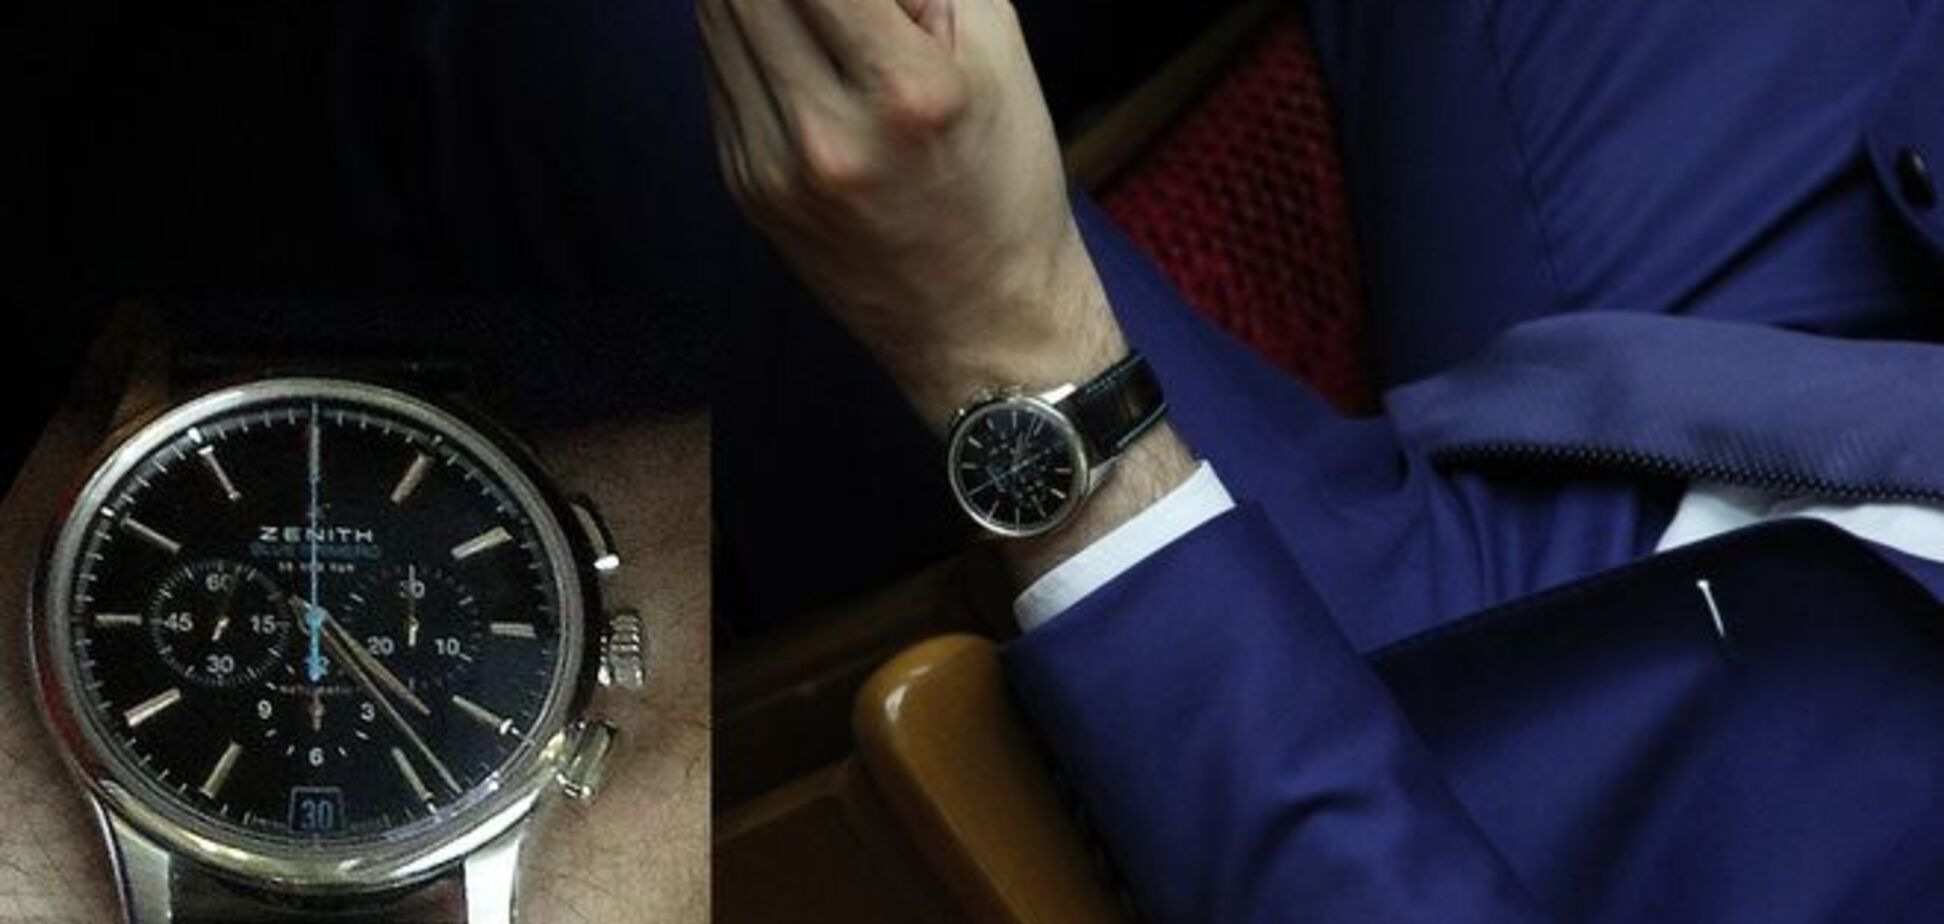 Замгенпрокурора Сакварелидзе 'засветил' часы за 120 тысяч: фотофакт